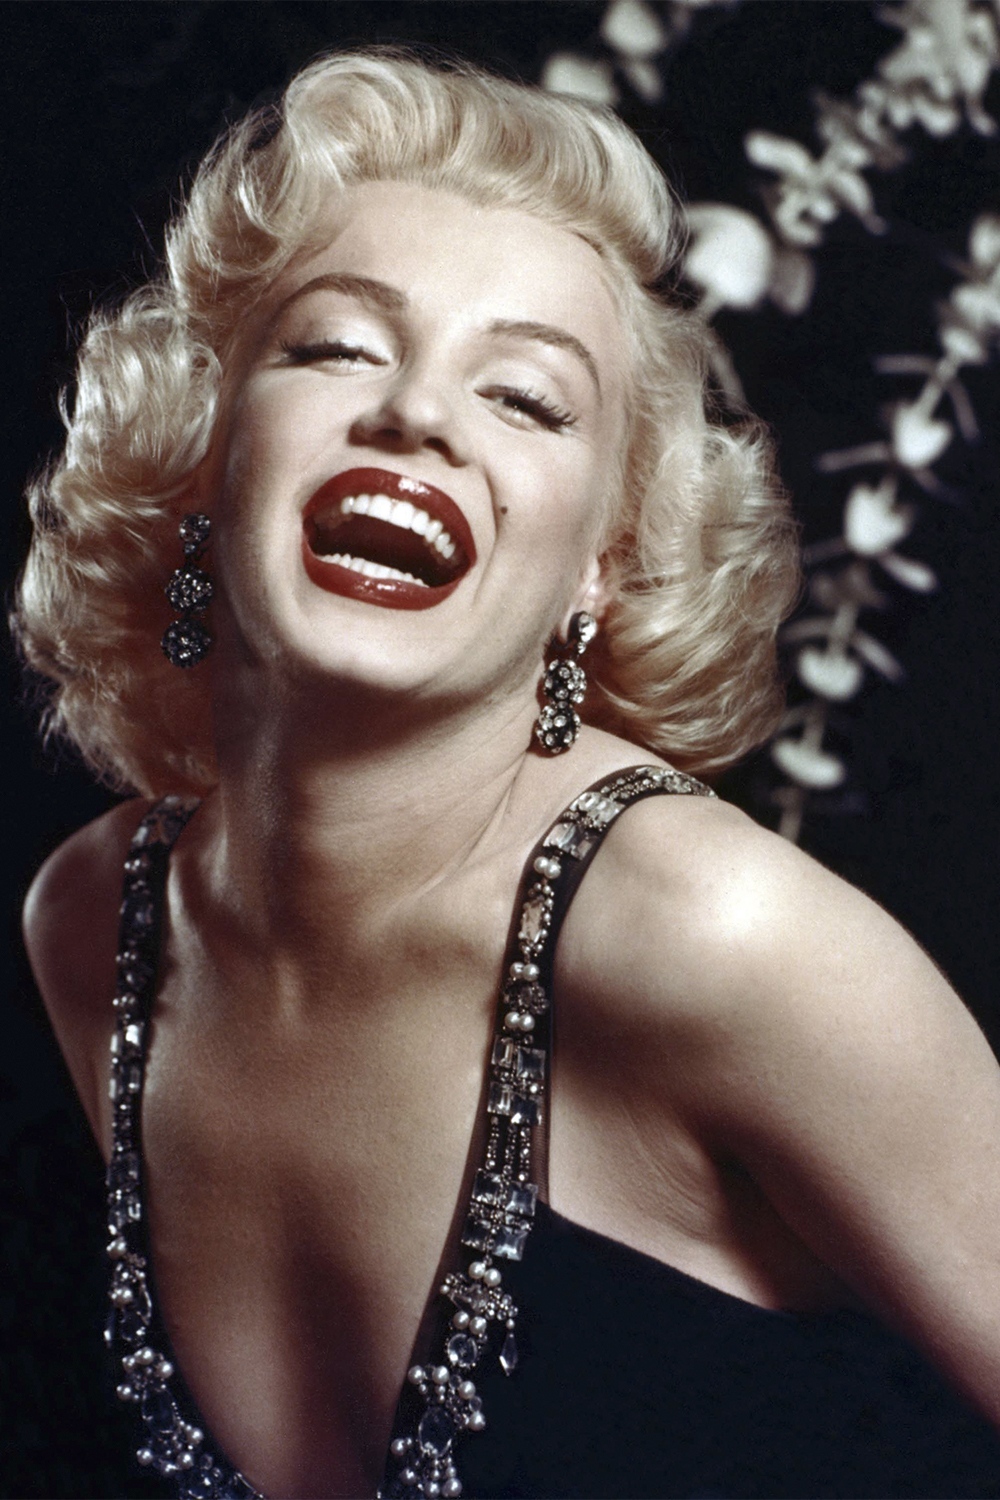 Leilão com itens de Marilyn Monroe acontece após 60 anos da morte da atriz  - Super Rádio Tupi